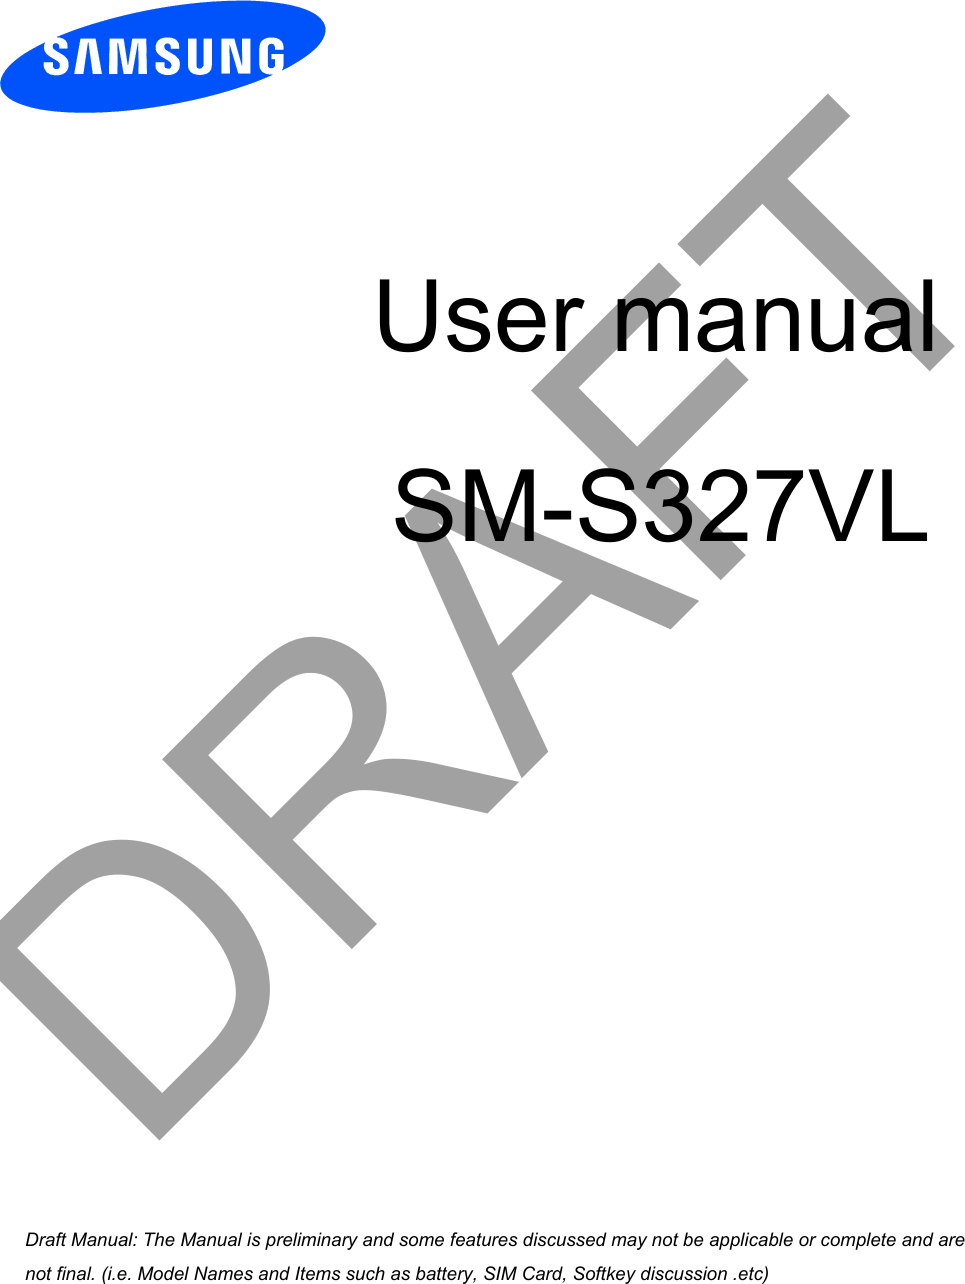 User manualSM-S327VLDRAFTa ana  ana  na and  a dd a n  aa   and a n na  d a and   a a  ad  dn 